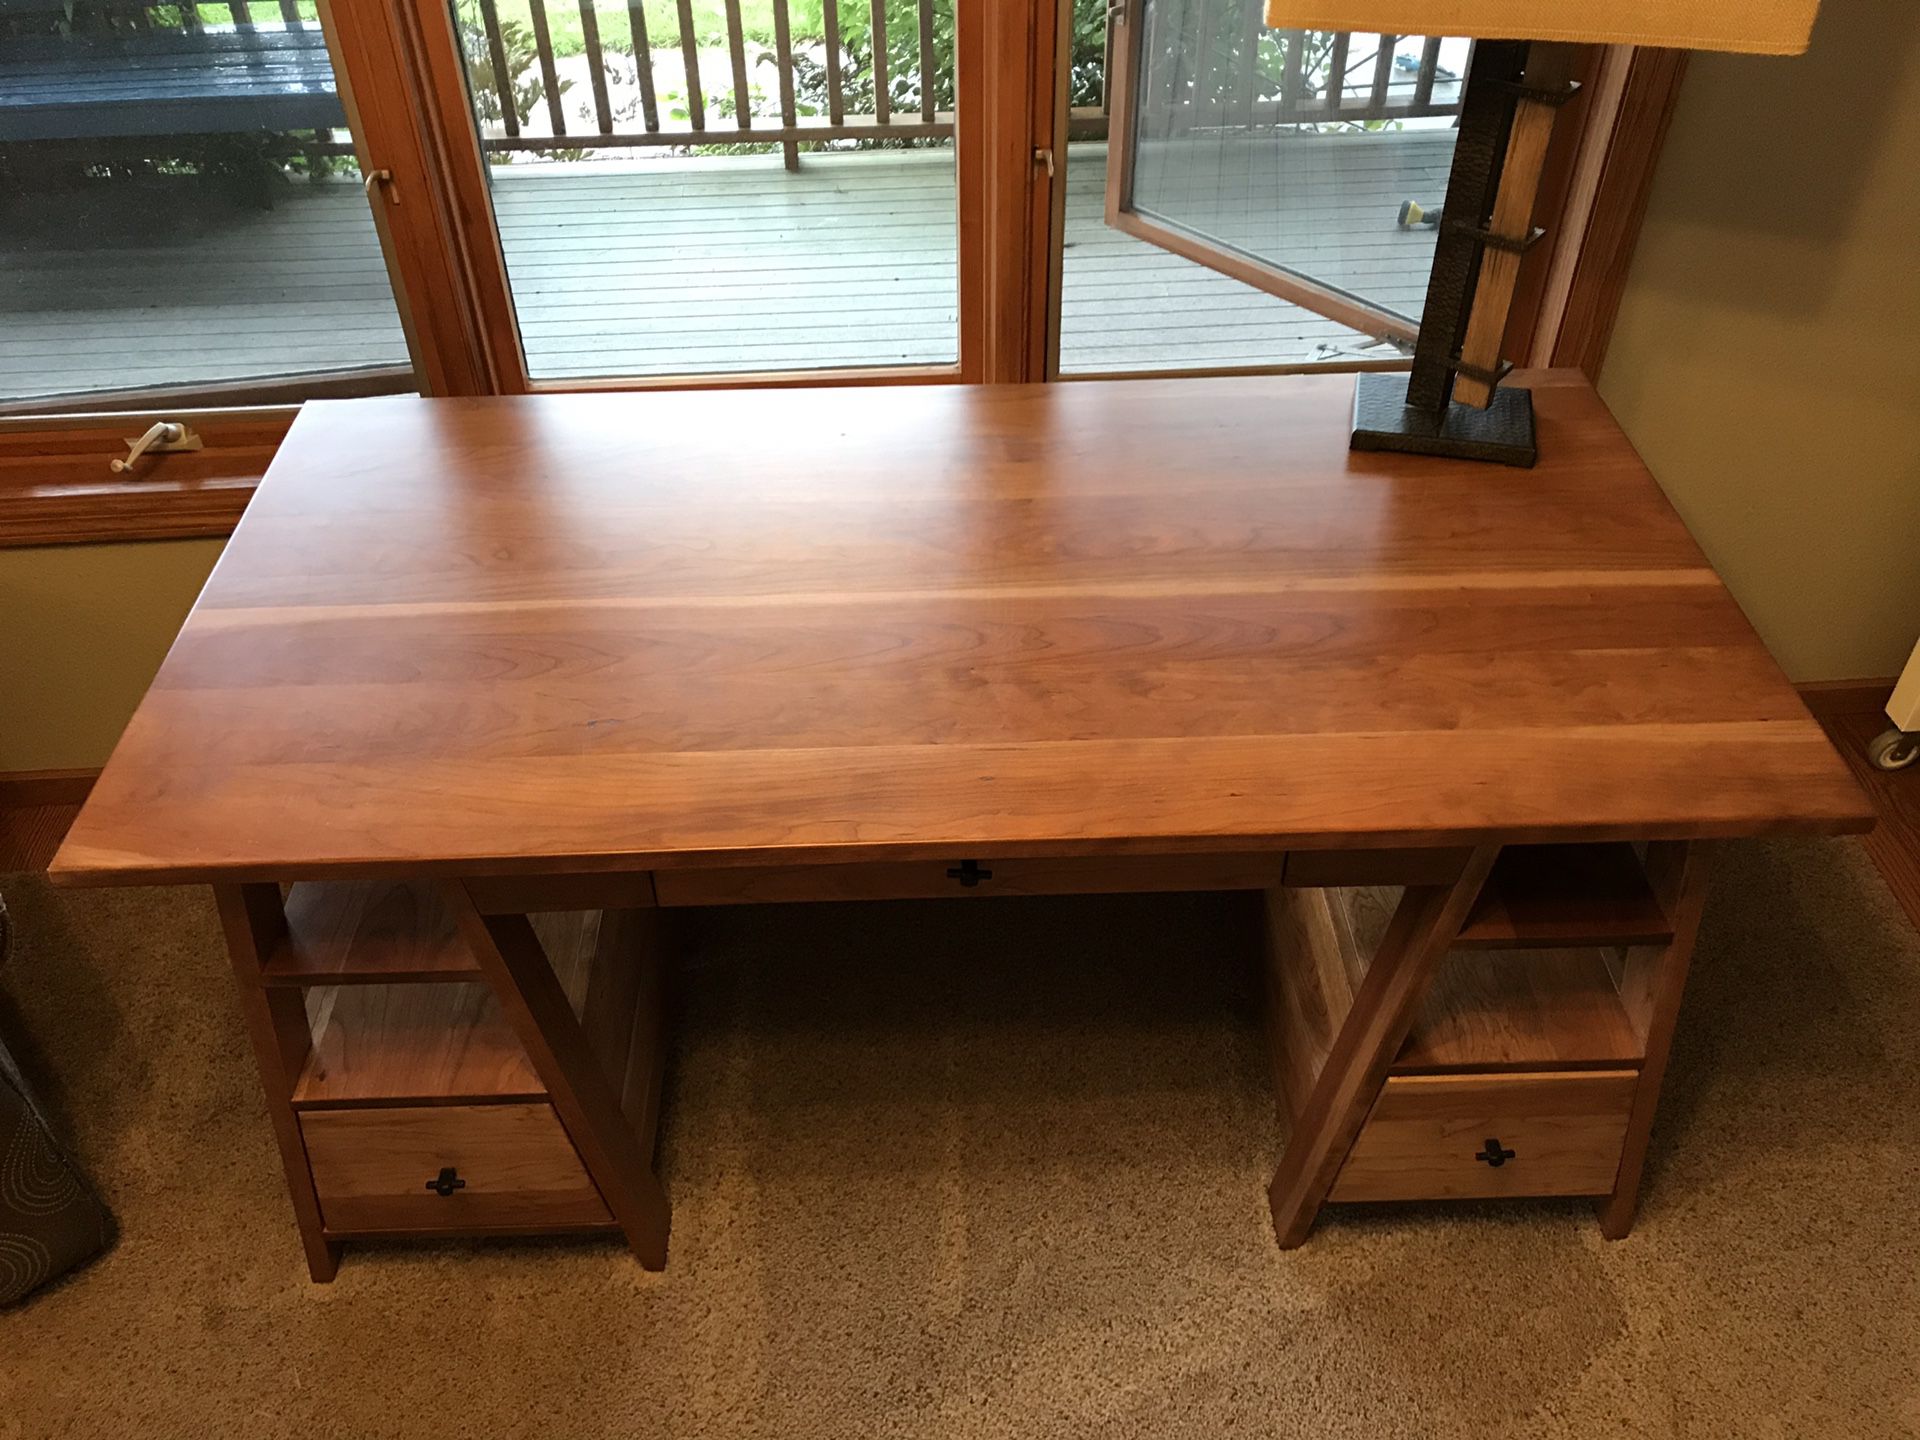 Yutzy built Cortland Sawhorse desk